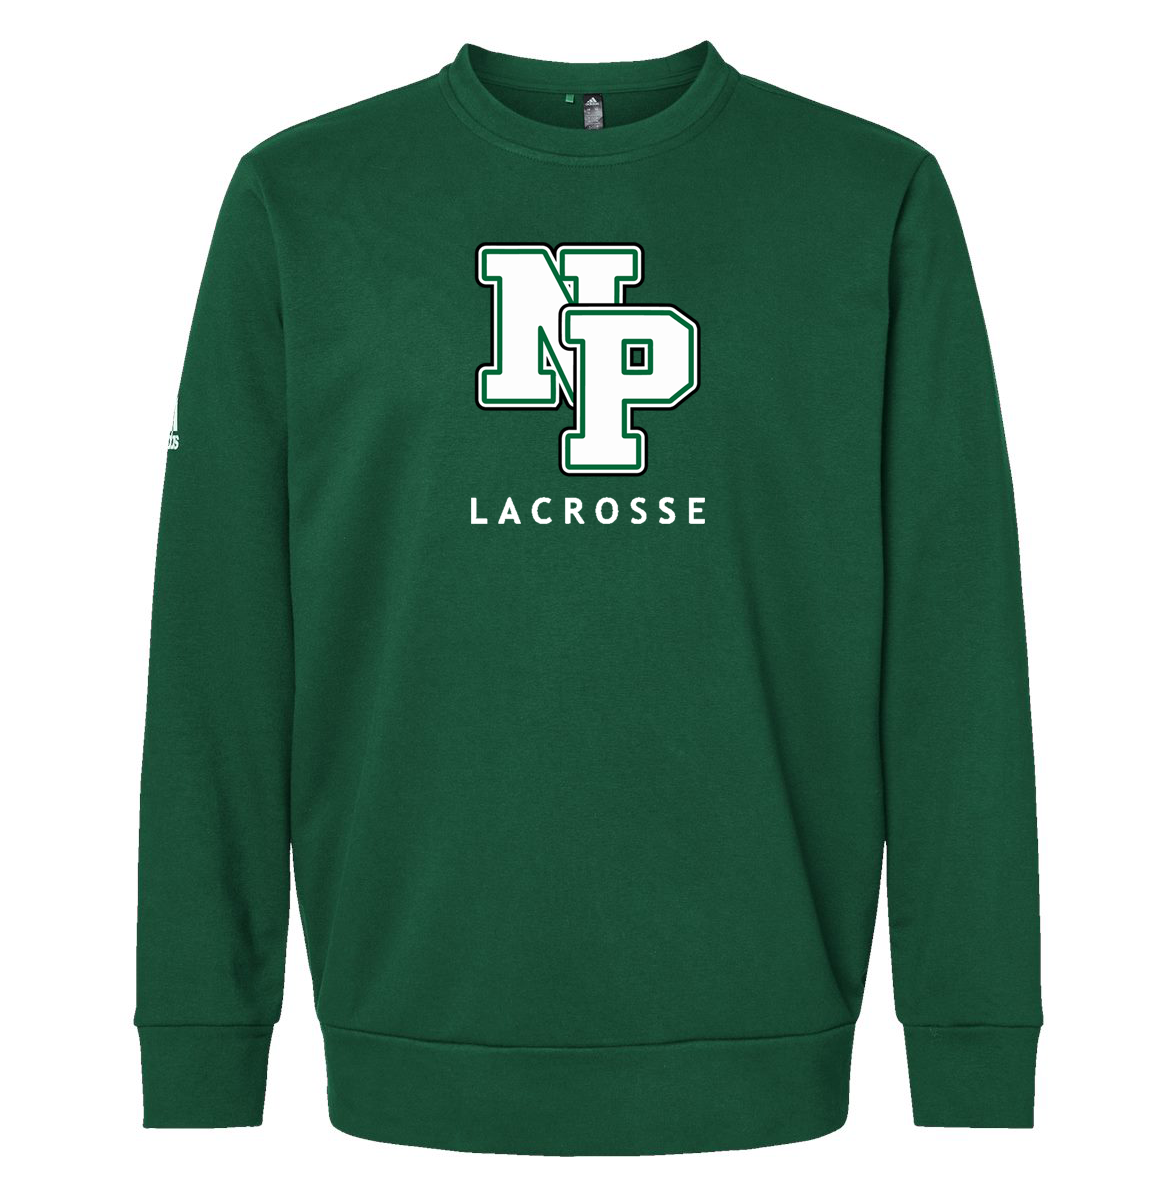 New Providence Lacrosse Adidas Fleece Crewneck Sweatshirt